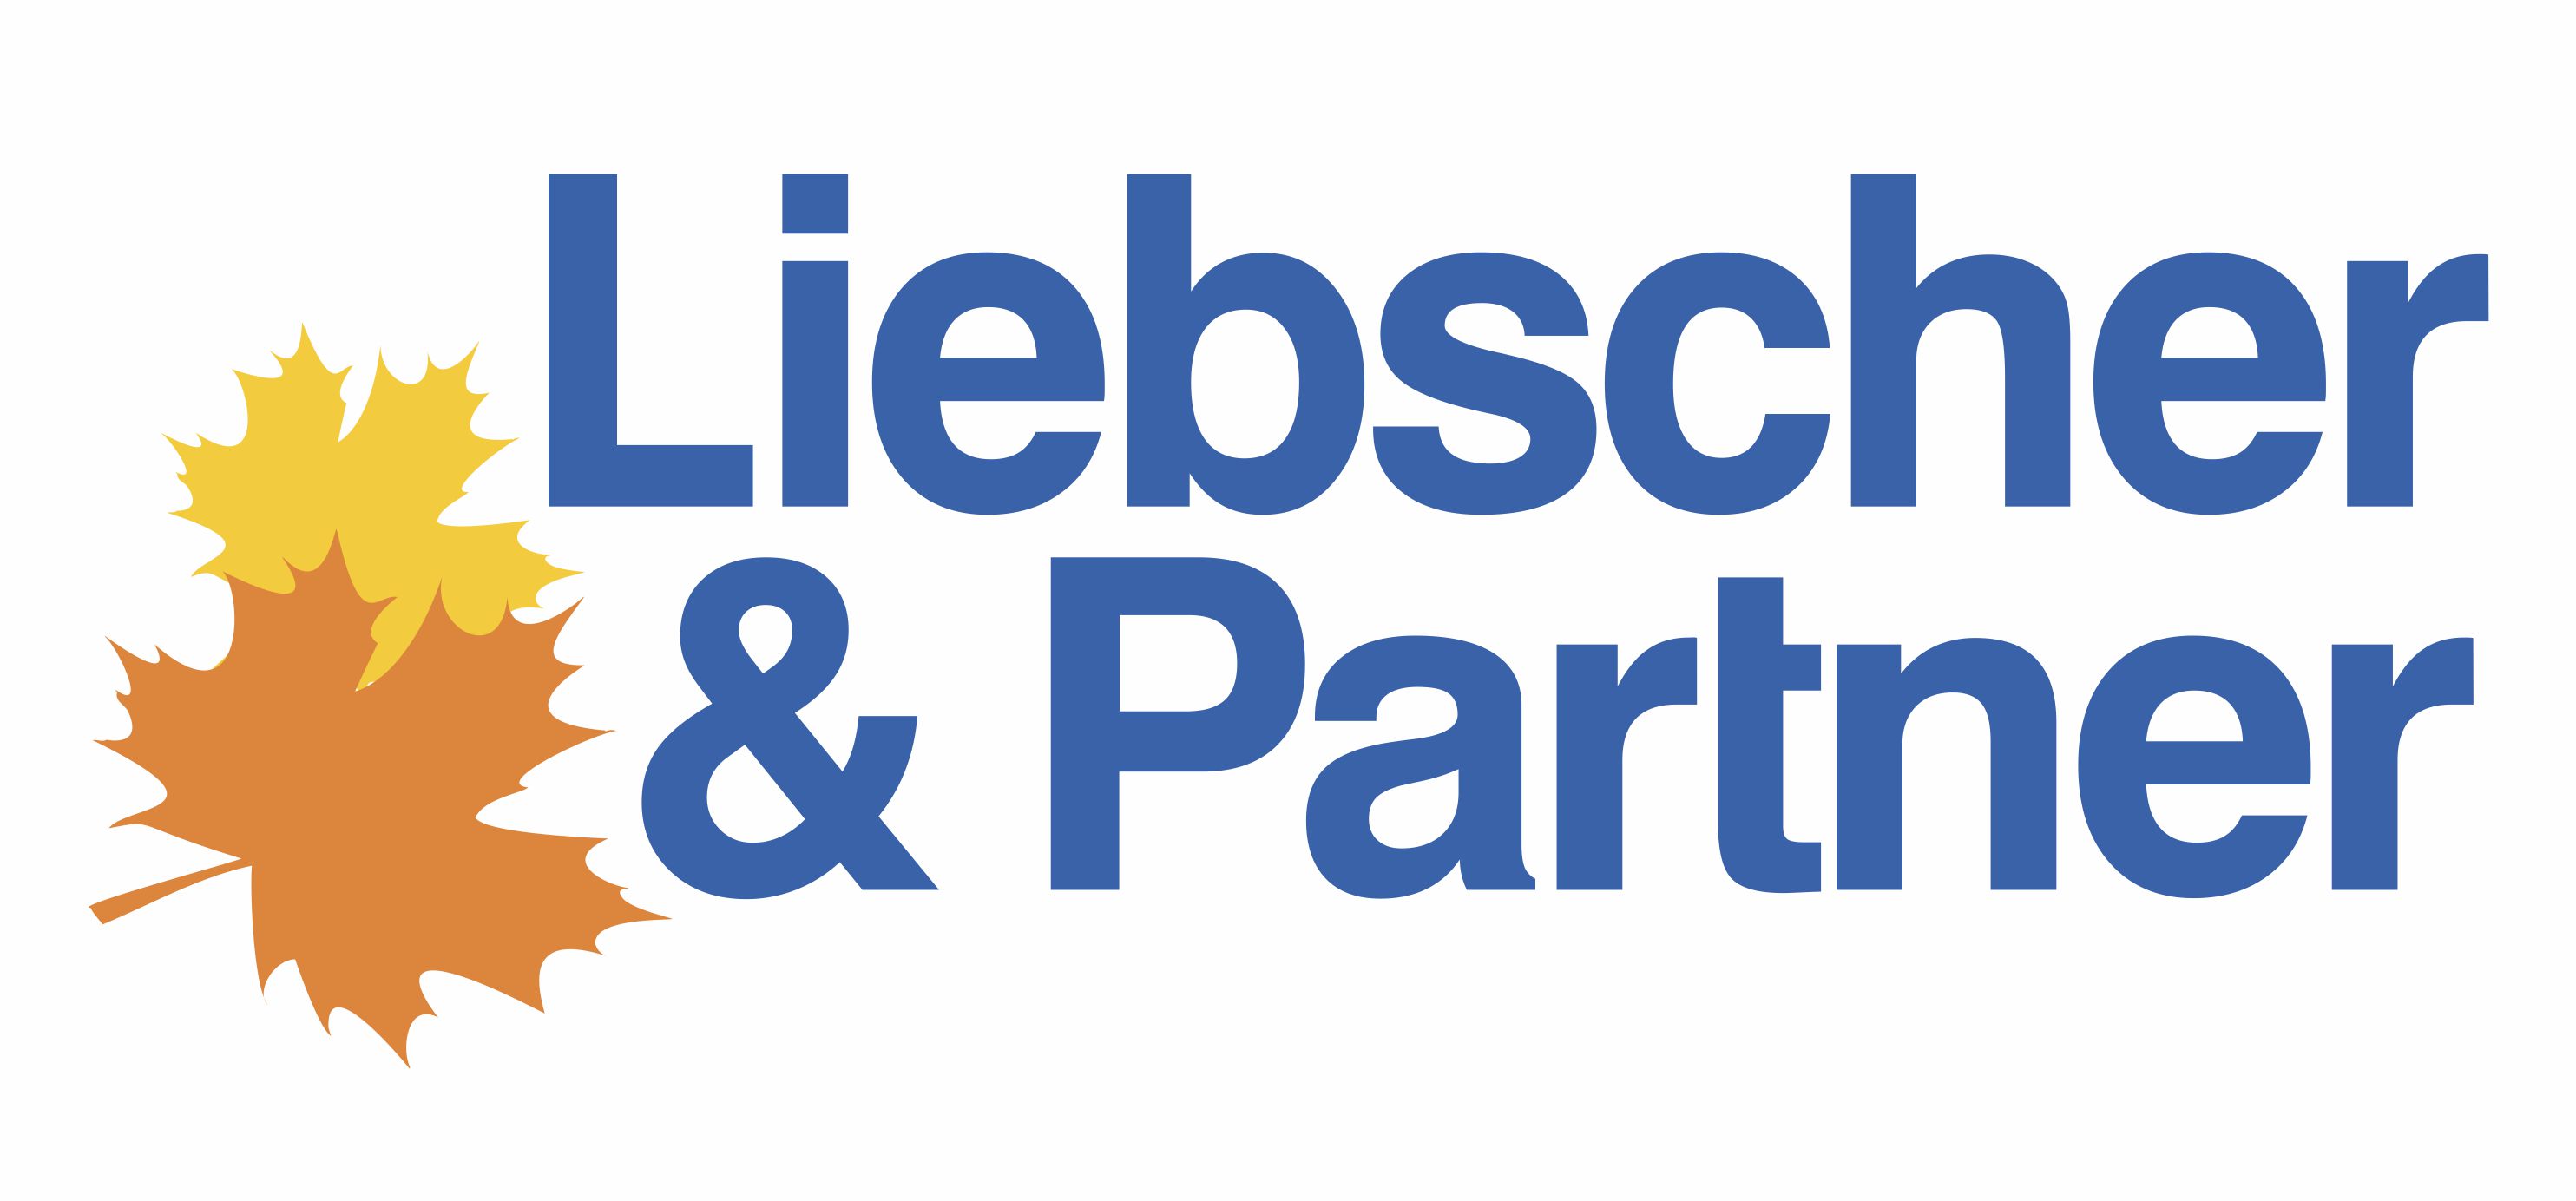 Liebscher & Partner in Chemnitz | Garten- & Landschaftsbau mit Grünflächenpflege